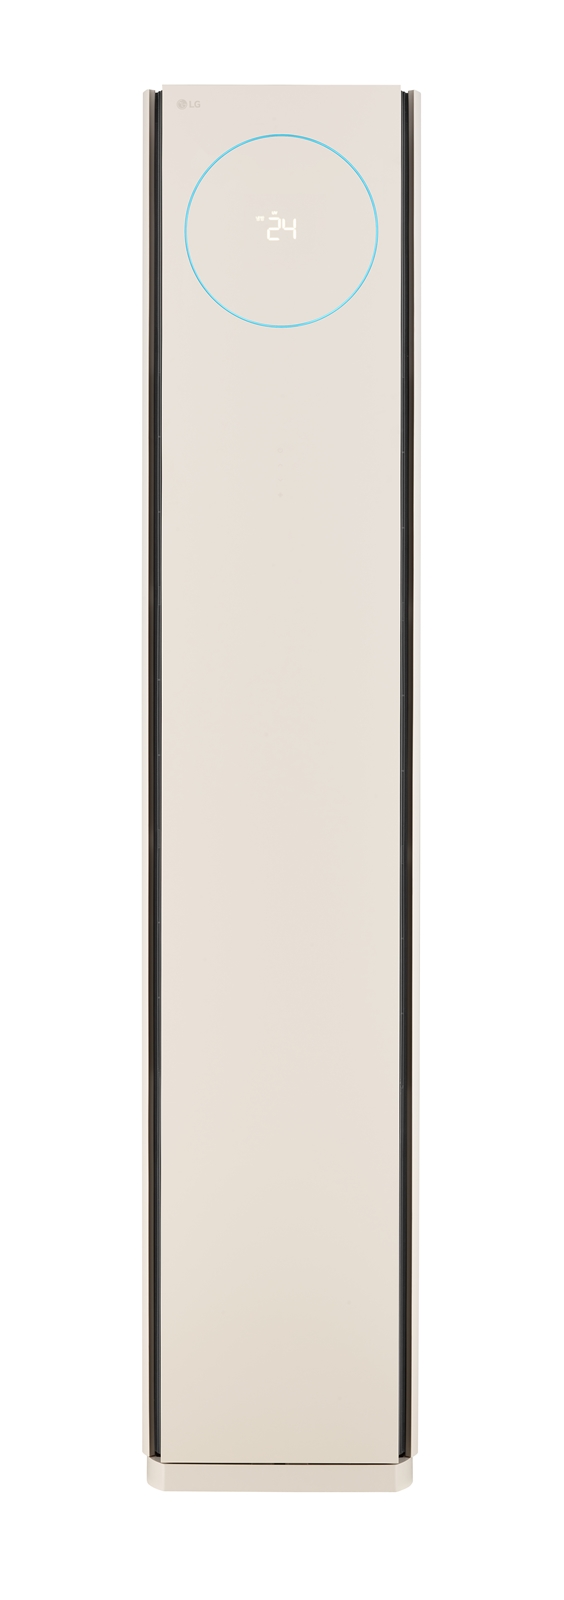 [사진3] LG 휘센 타워Ⅱ 사계절 에어컨 제품 이미지.